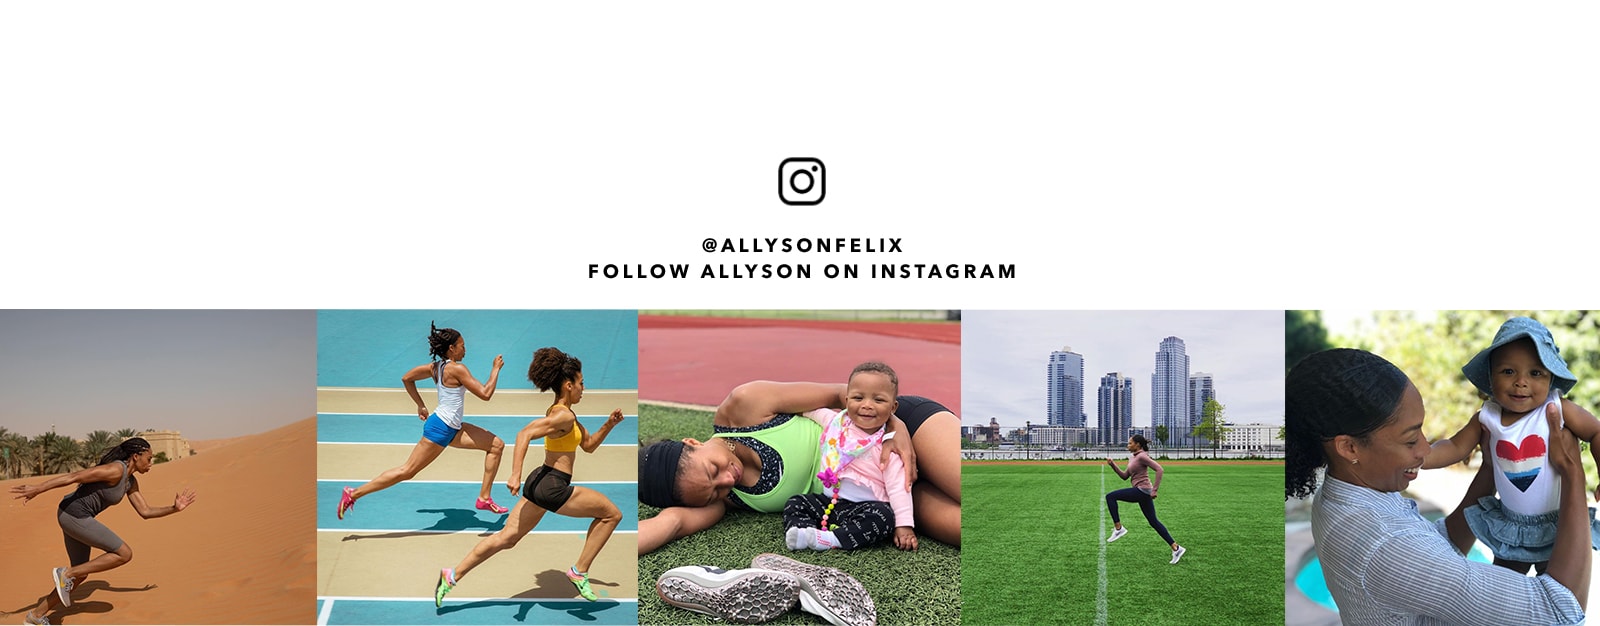 Follow Allyson on Instagram @Allysonfelix